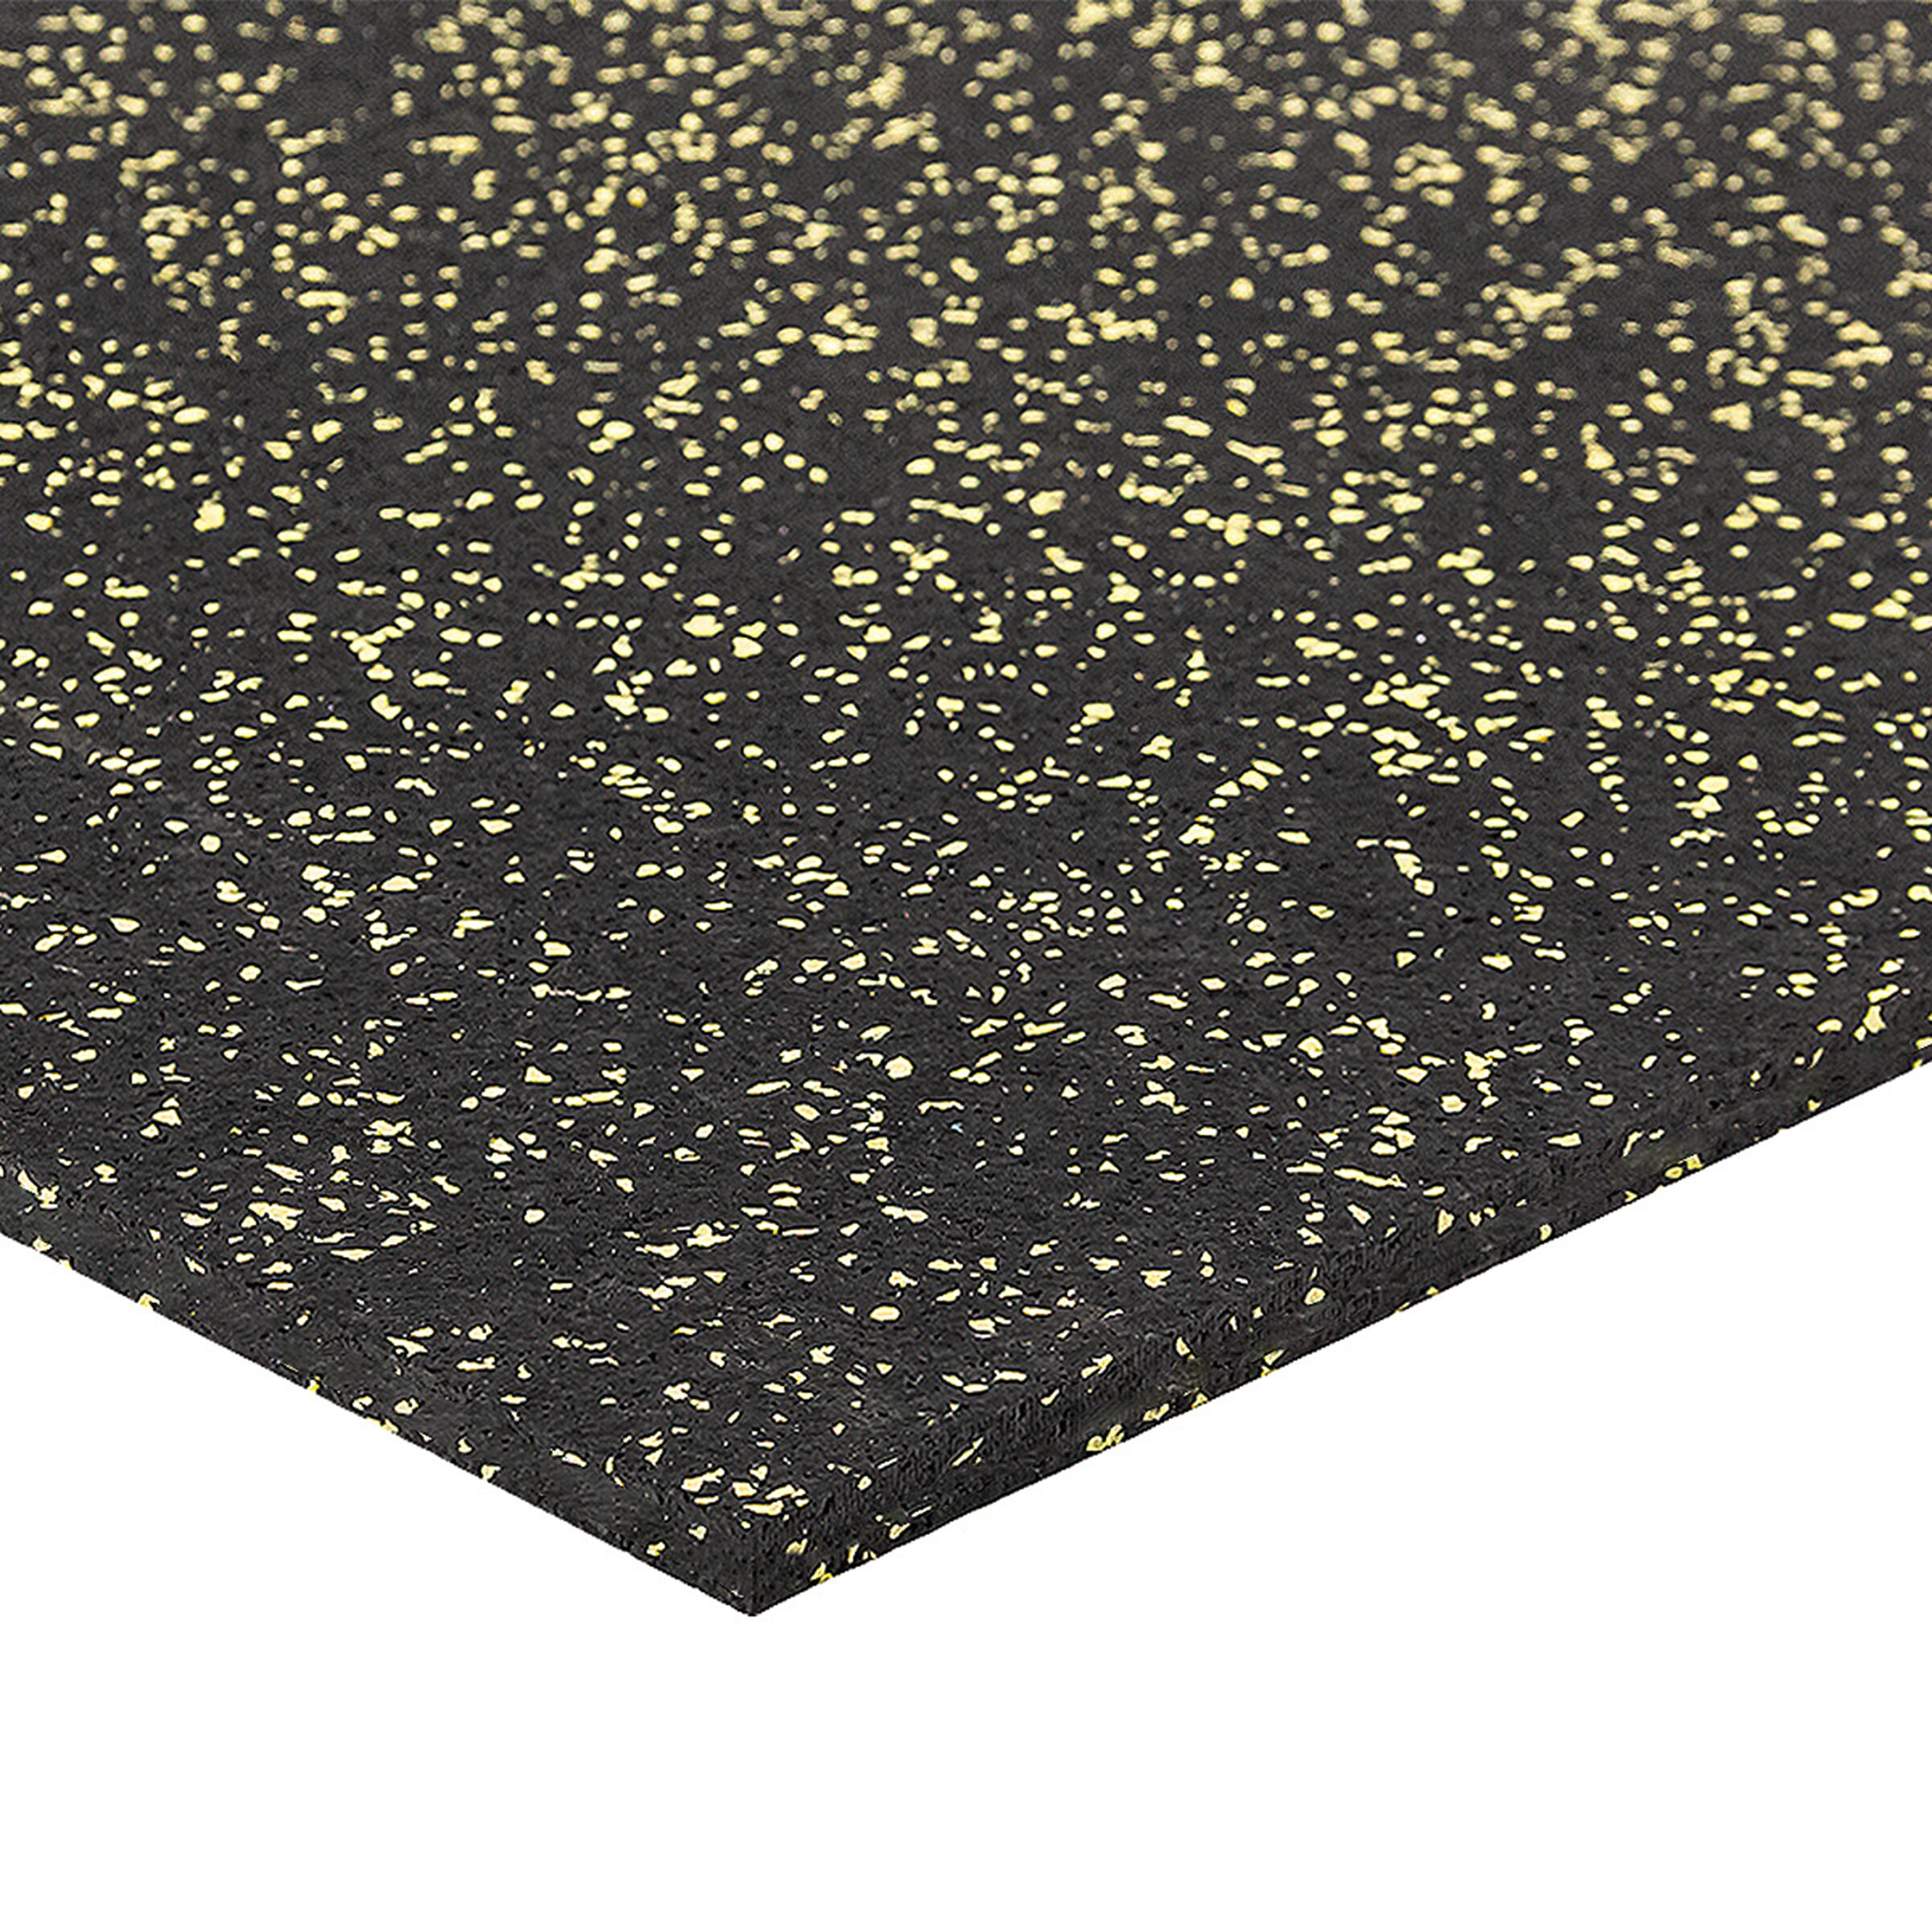 Čierno-žltá podlahová guma (puzzle - okraj) FLOMA FitFlo SF1050 - dĺžka 100 cm, šírka 100 cm, výška 1 cm